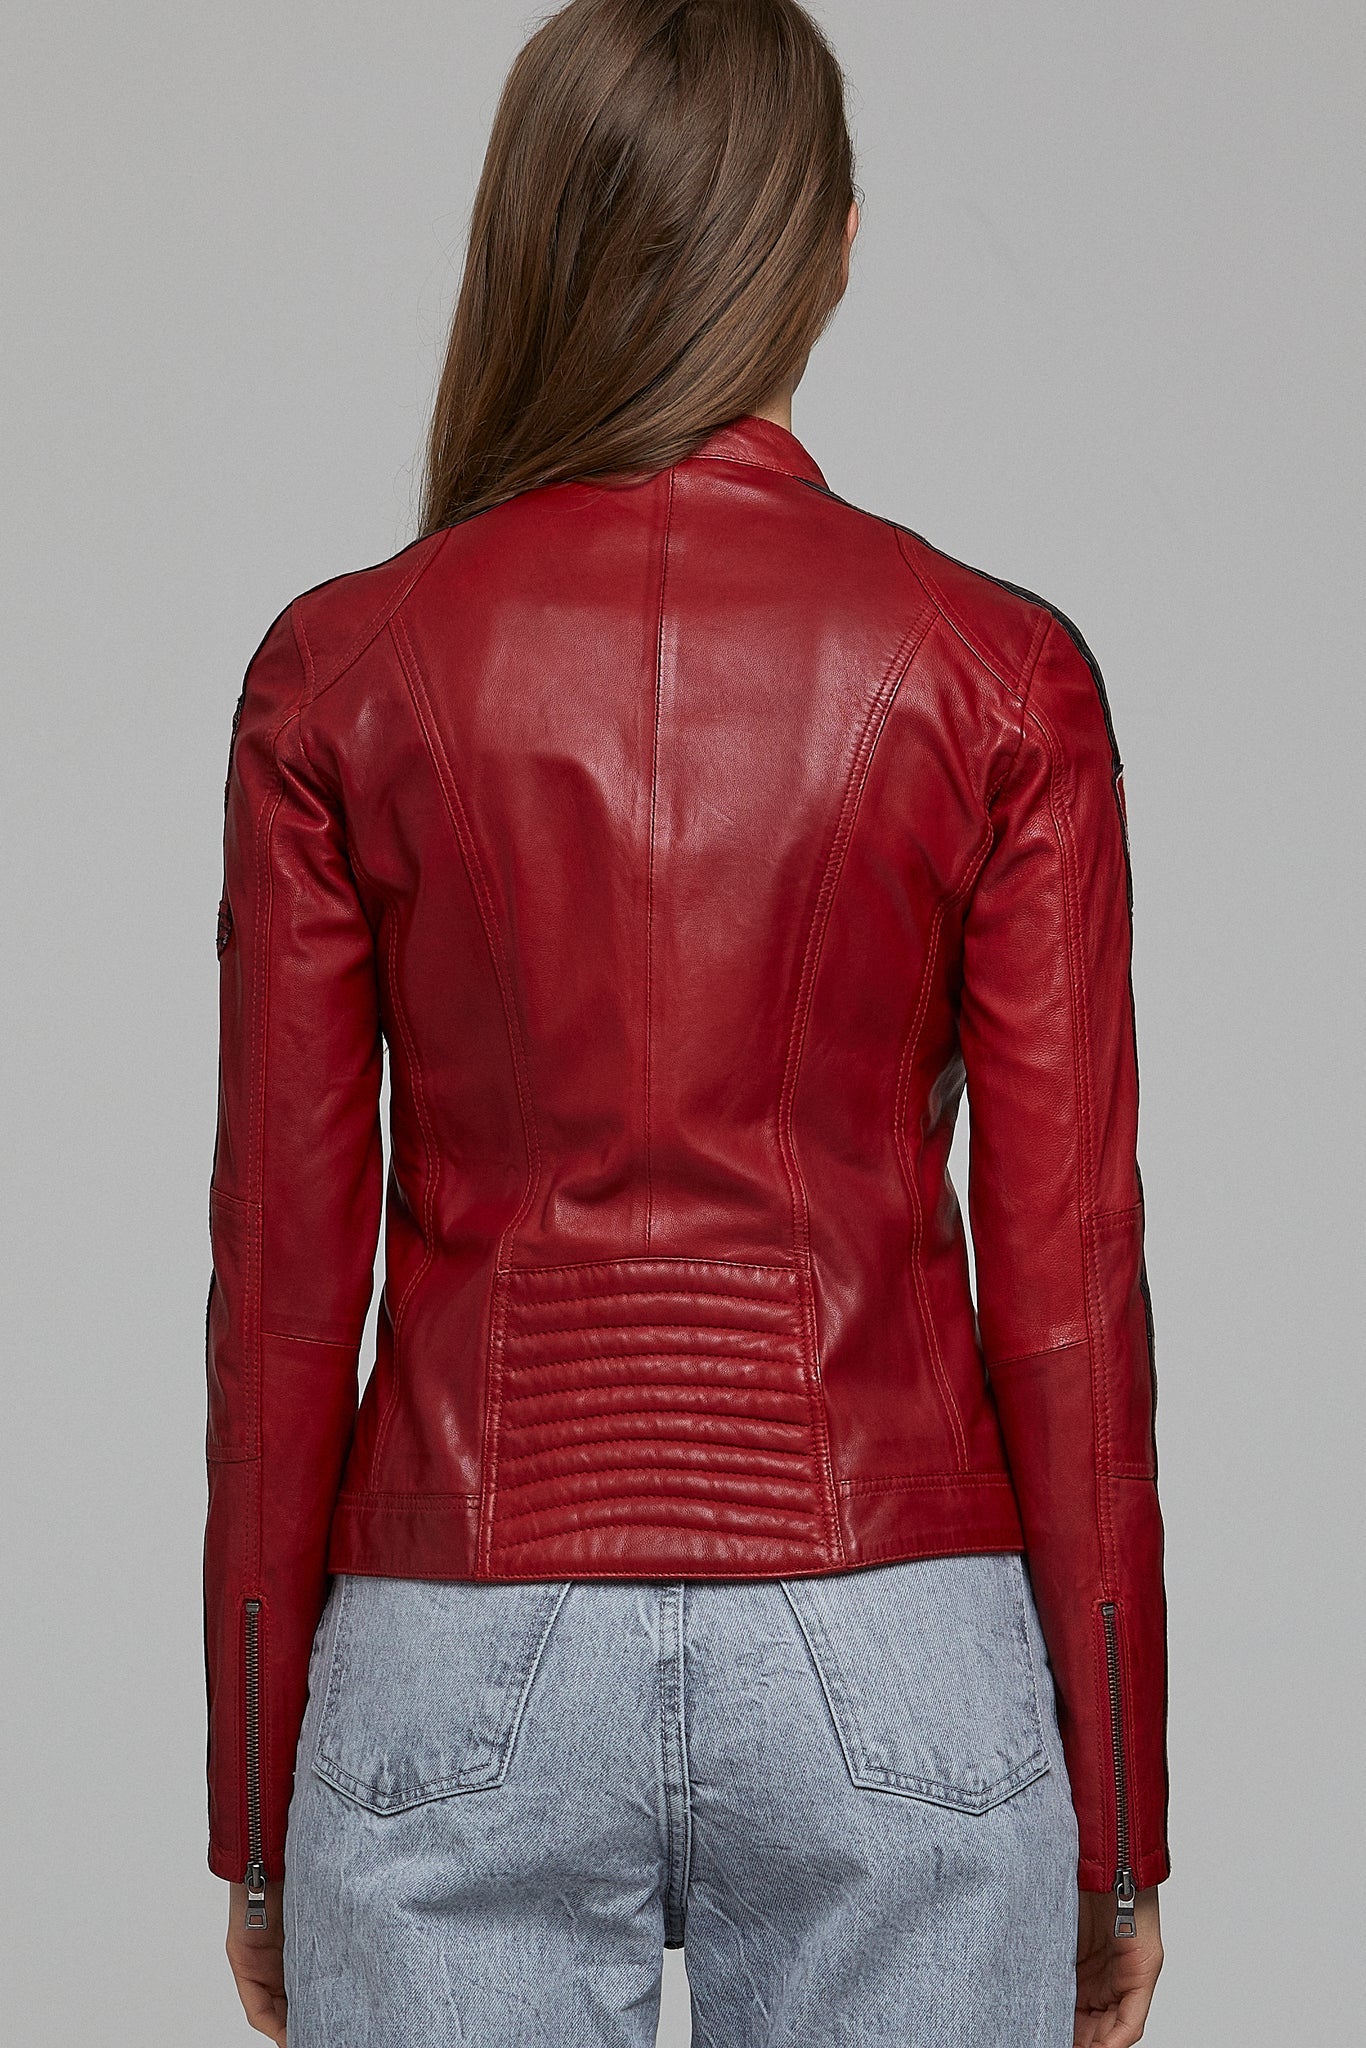 Ladyracer Women's Red Biker Leather Jacket